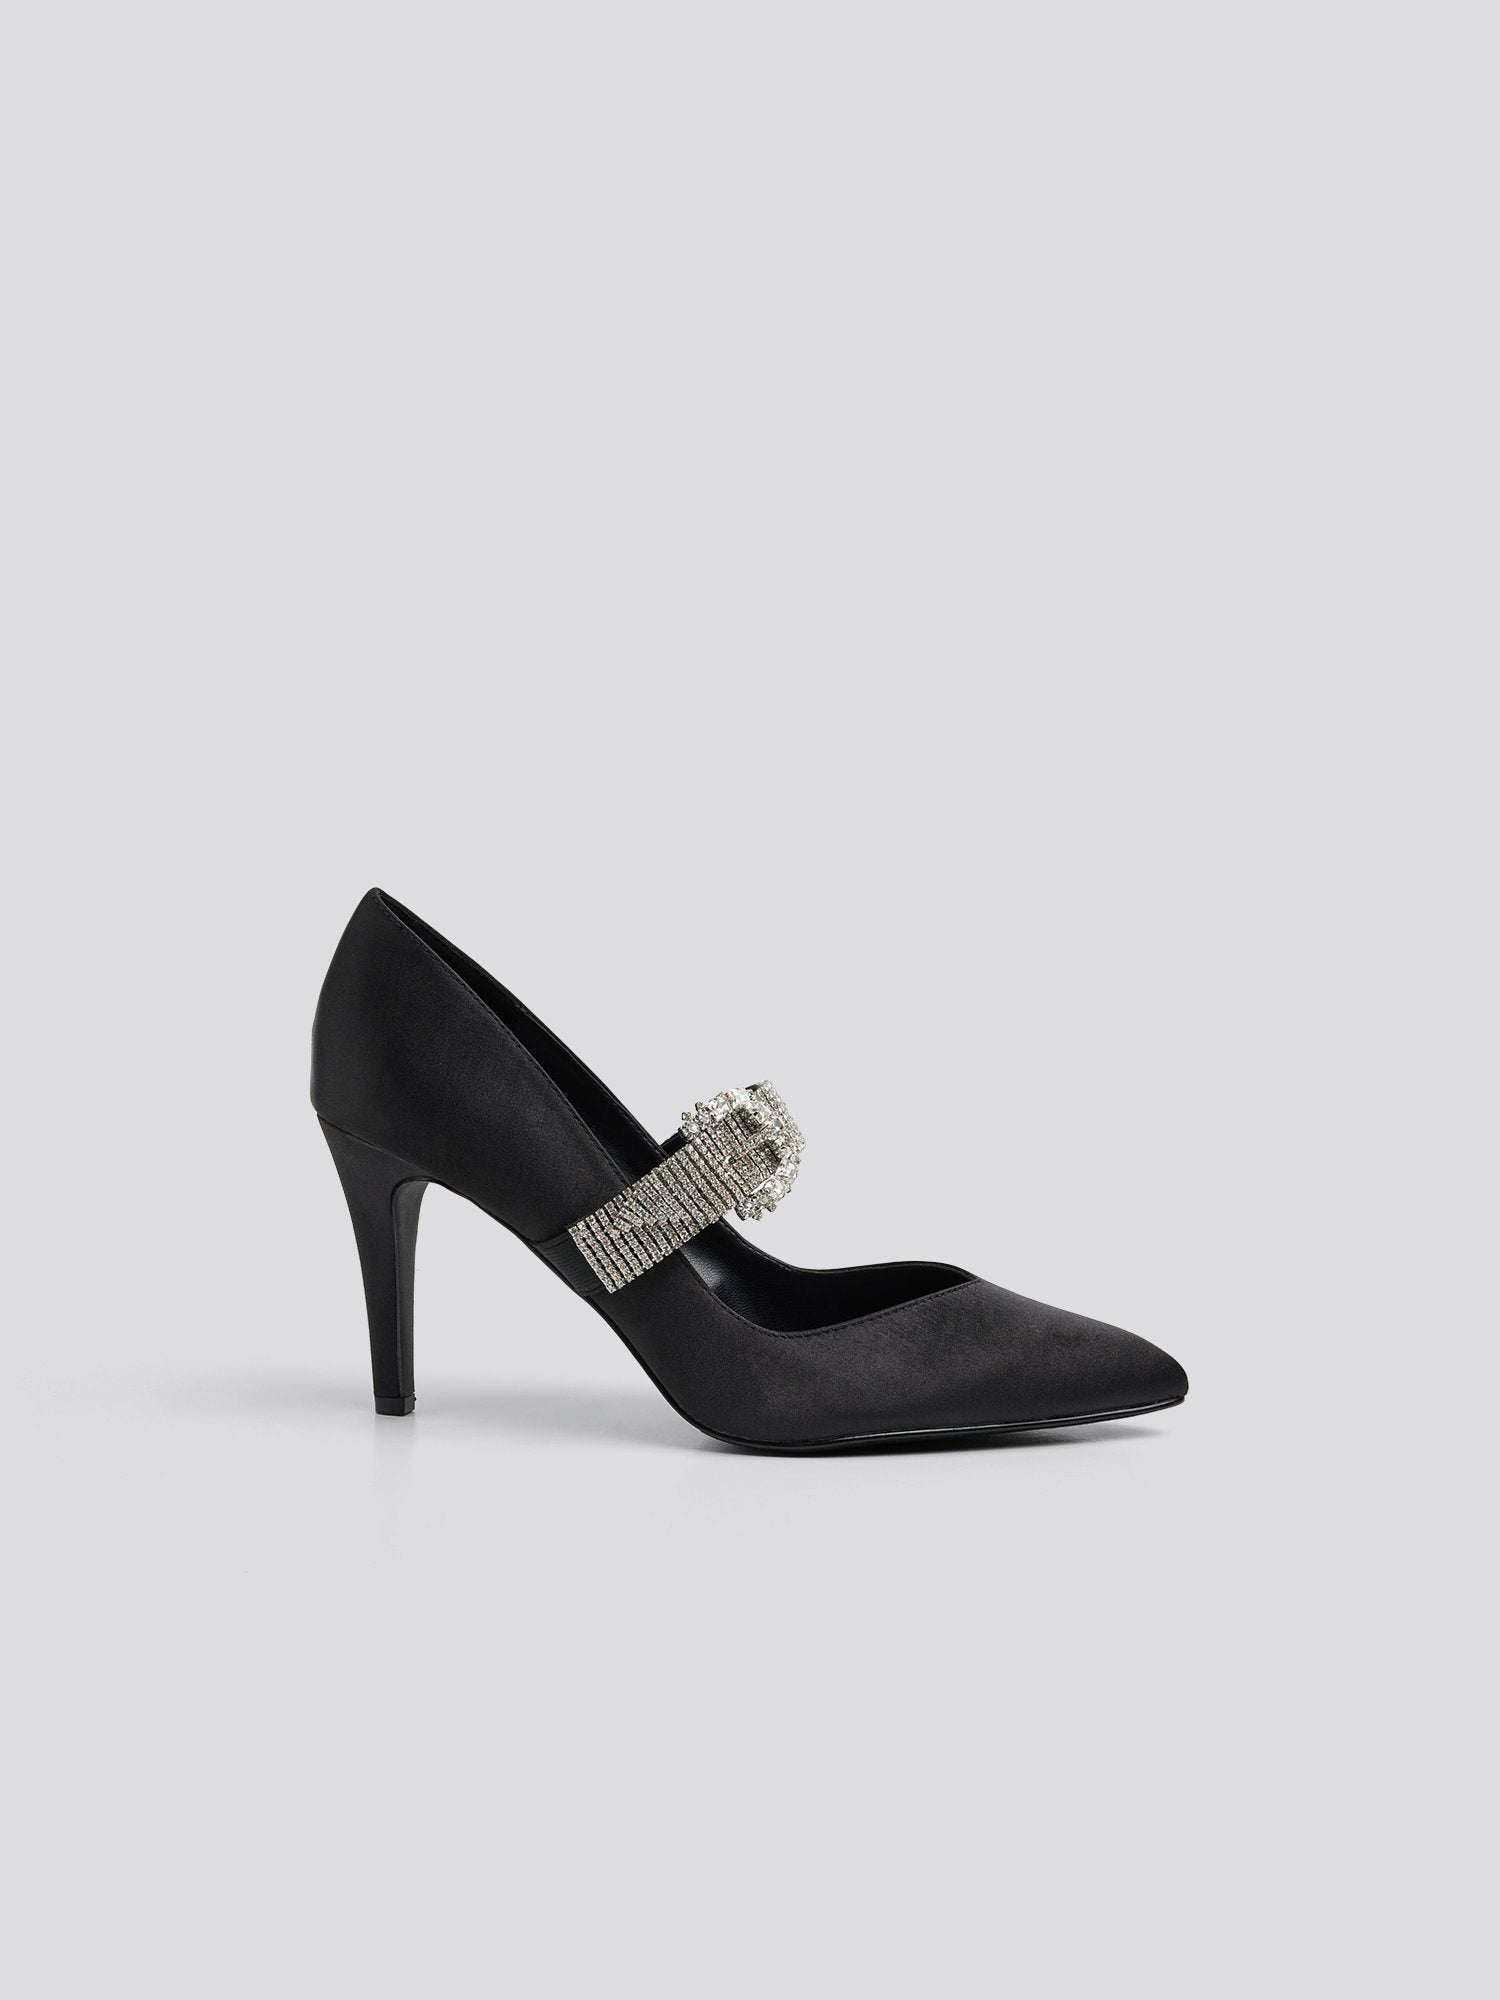 Wide Width Two Part Block Heels | Wide width heels, Heels, Black block heels